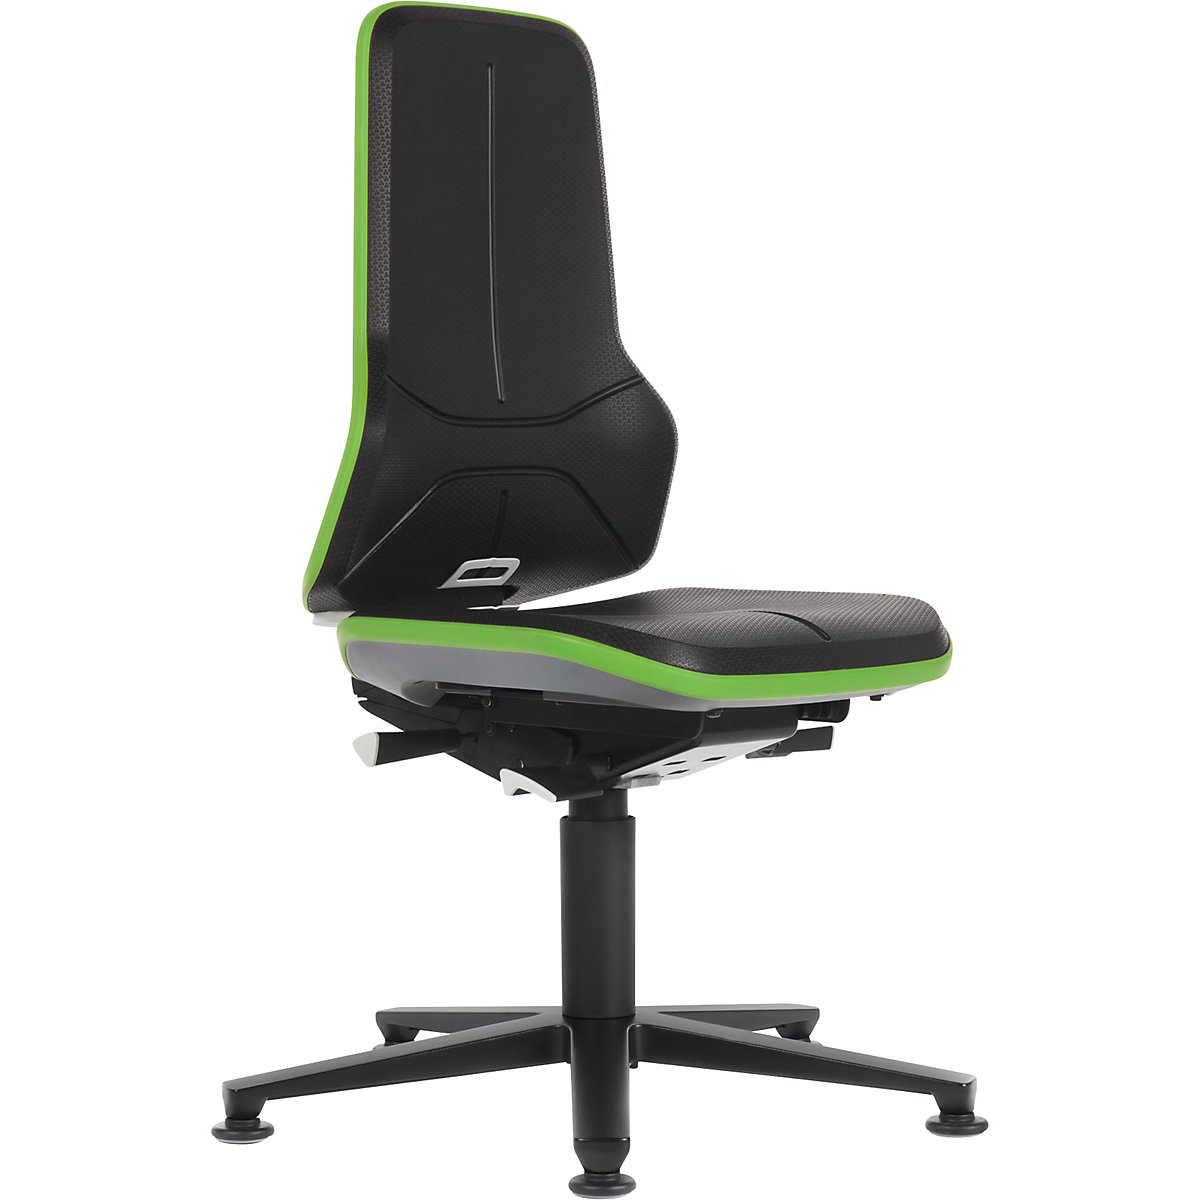 Pracovní otočná židle NEON, patky – bimos, permanentní kontakt, PU pěna, zelený flexibilní pás-15